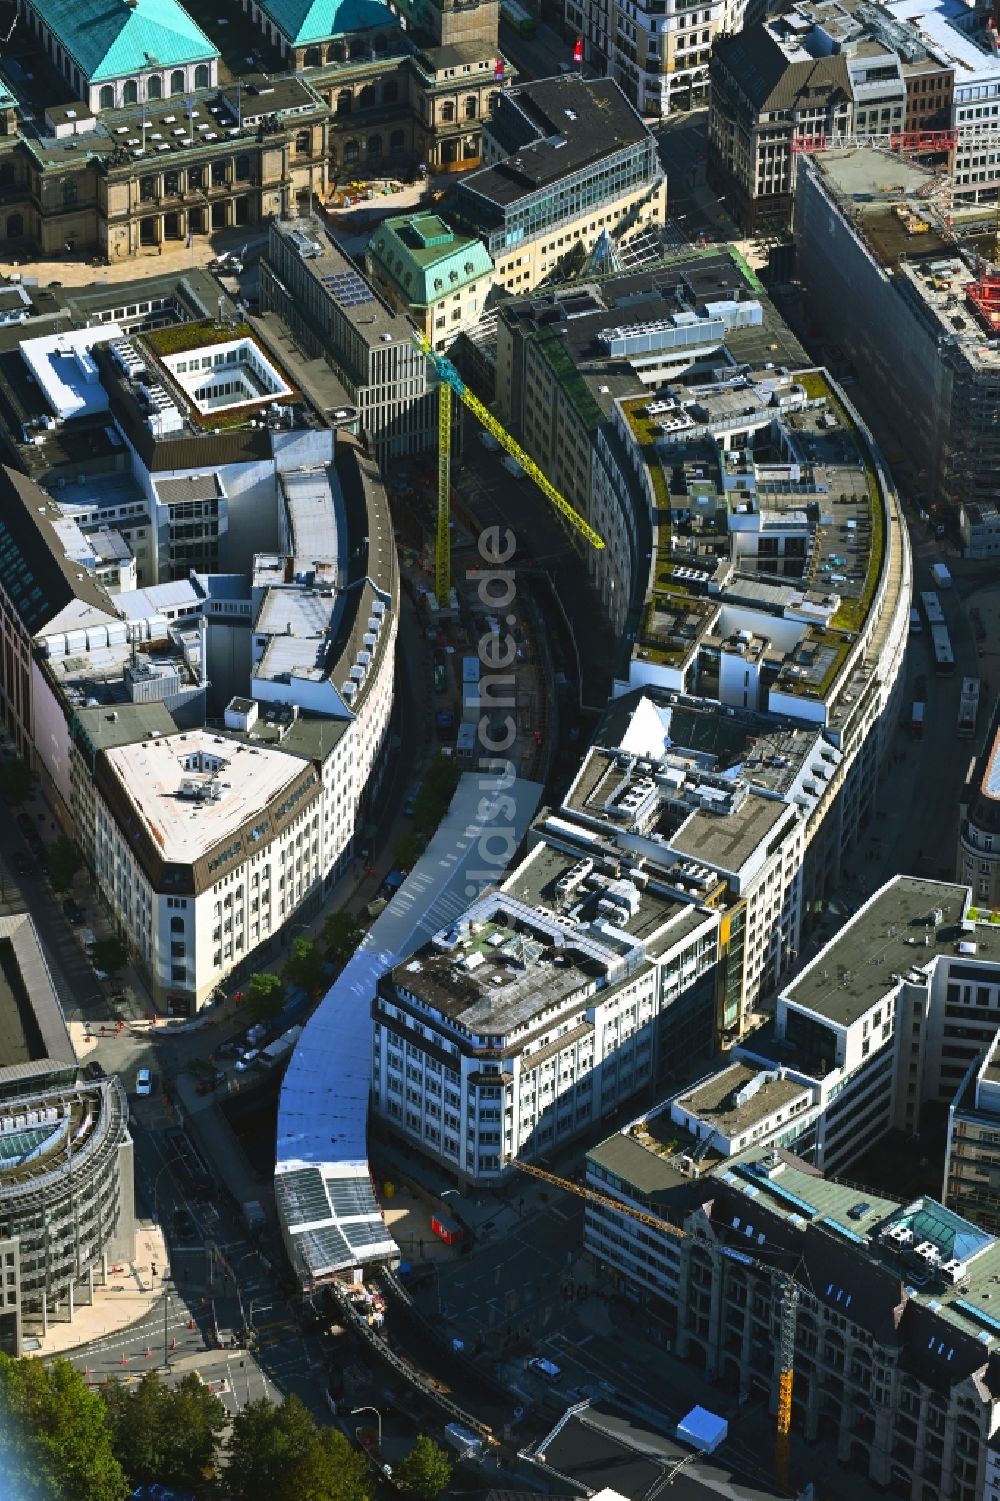 Luftbild Hamburg - Bauarbeiten zur Sanierung am Gleisverlauf und Bahnhofsgebäude der U-Bahnlinie U3 zwischen Rödingsmarkt und Rathaus in Hamburg, Deutschland